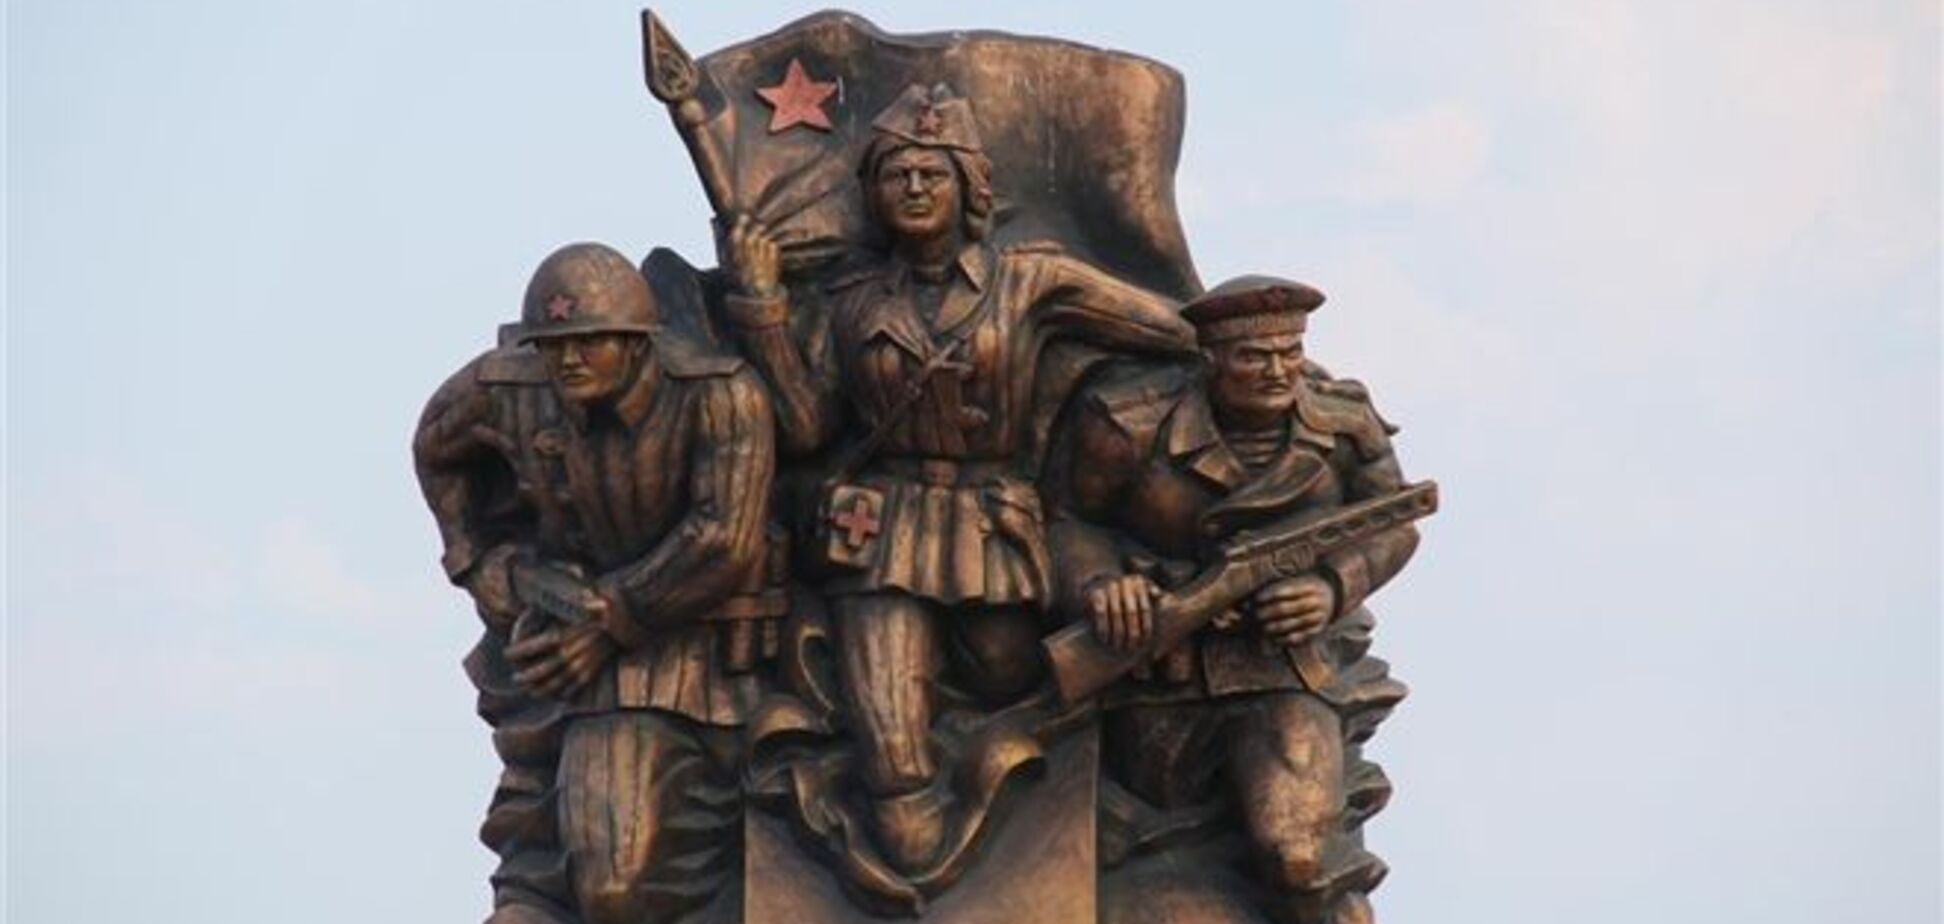 Пам'ятник десантникам в Керчі: пілотка на шість розмірів більше голови